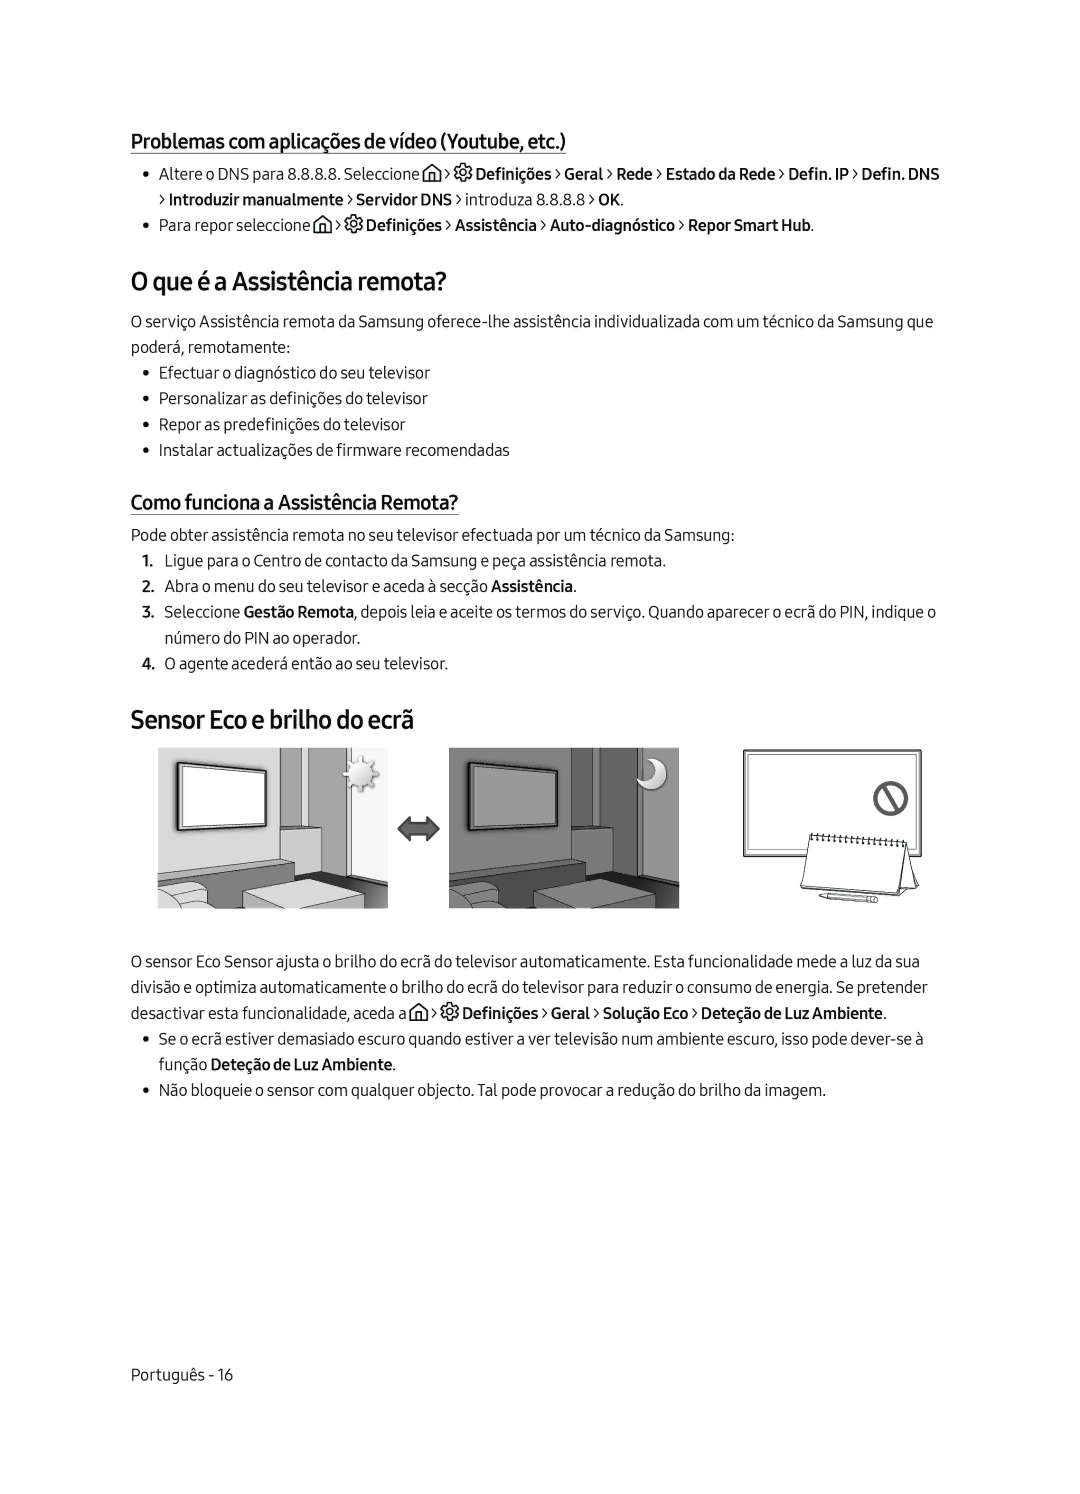 Samsung UE55MU6225KXXC manual Que é a Assistência remota?, Sensor Eco e brilho do ecrã, Como funciona a Assistência Remota? 